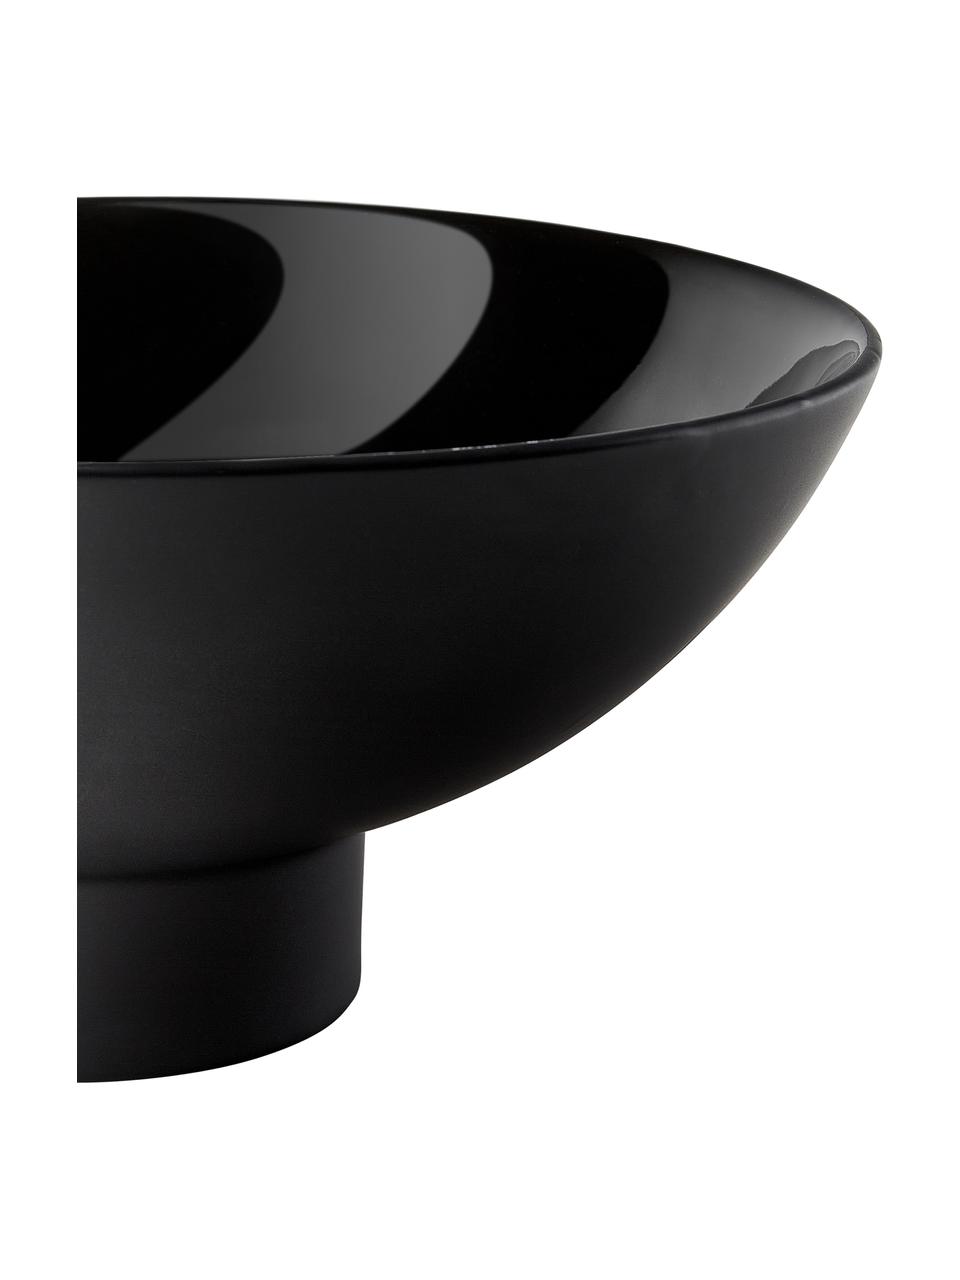 Coupe décorative noire Benito Ø 28 cm, Grès cérame, Noir, Ø 28 x haut. 13 cm